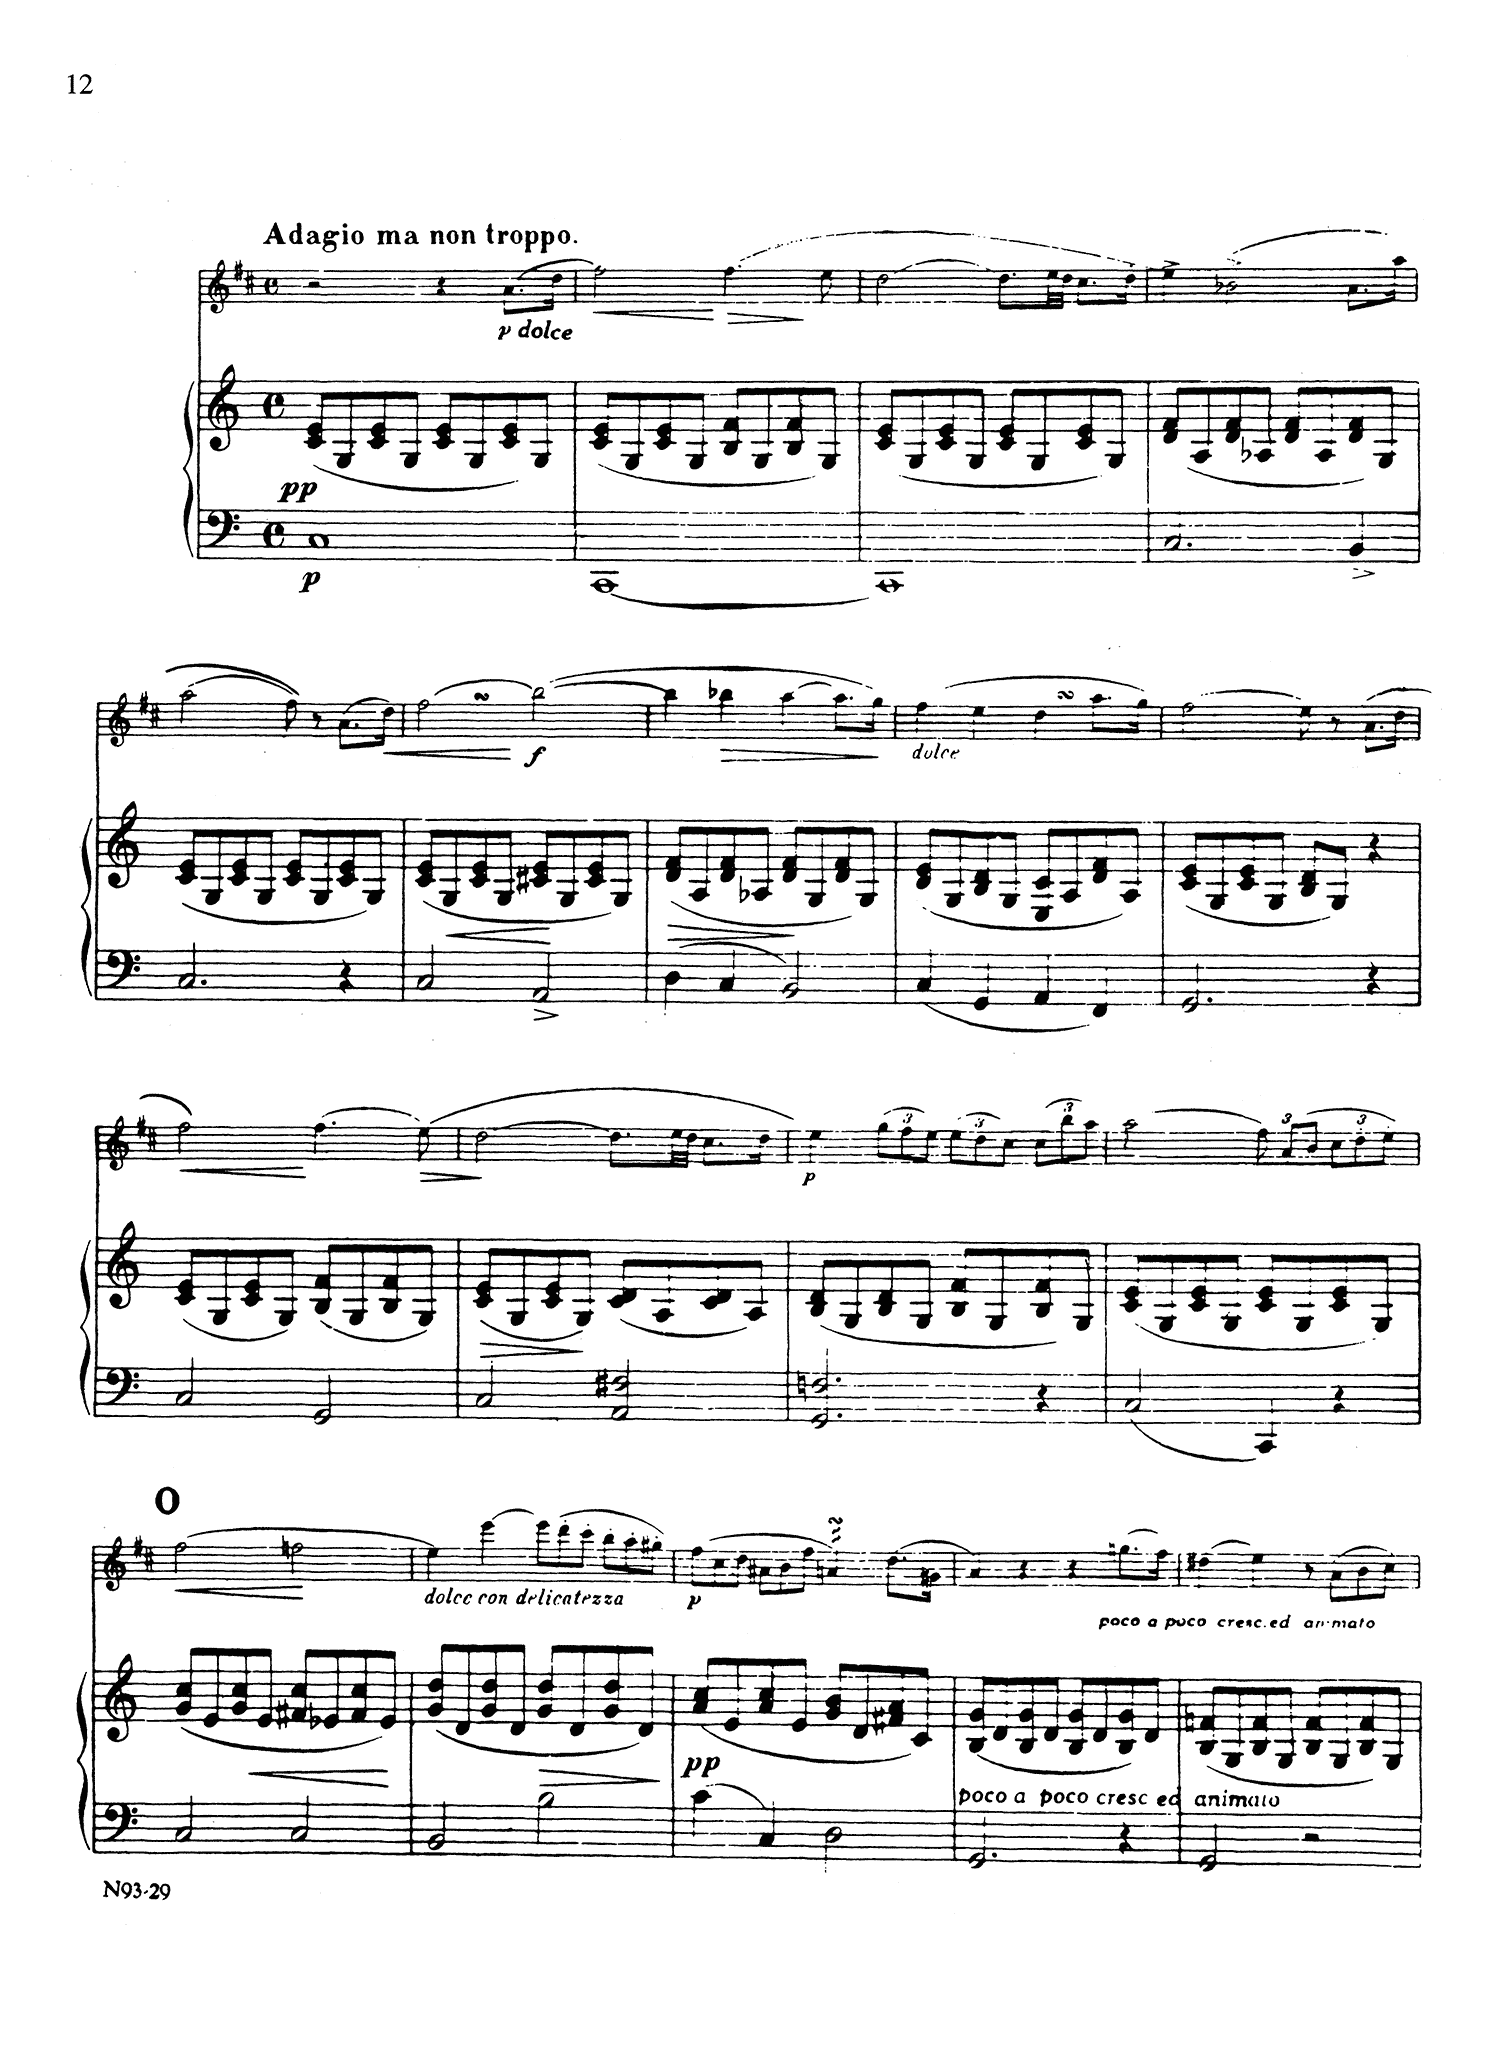 Clarinet Concerto No. 1, Op. 73 - Movement 2